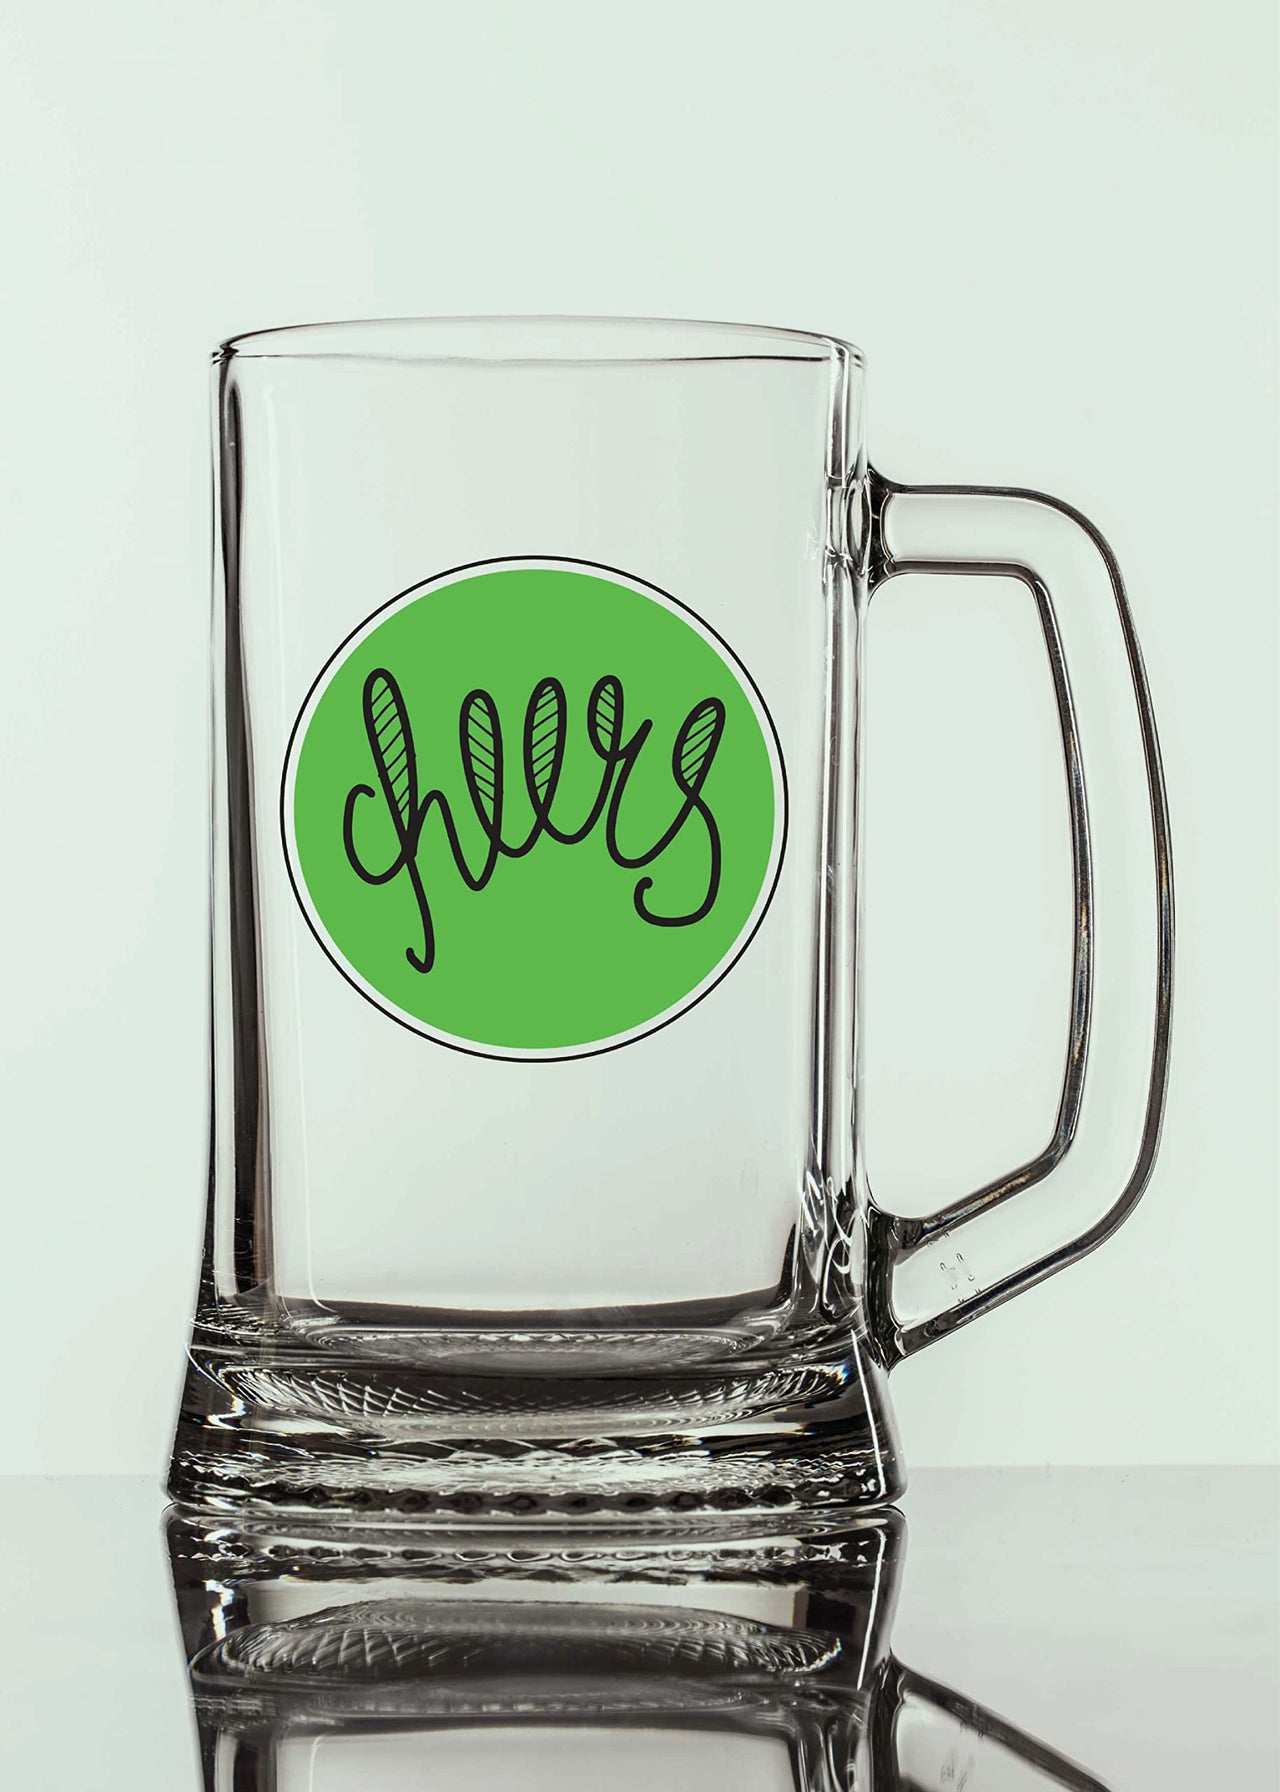 Cheers - Beer Mug - 1 Piece, Clear, 500 ml -Transparent Glass Beer Mug - Printed Beer Mug with Handle